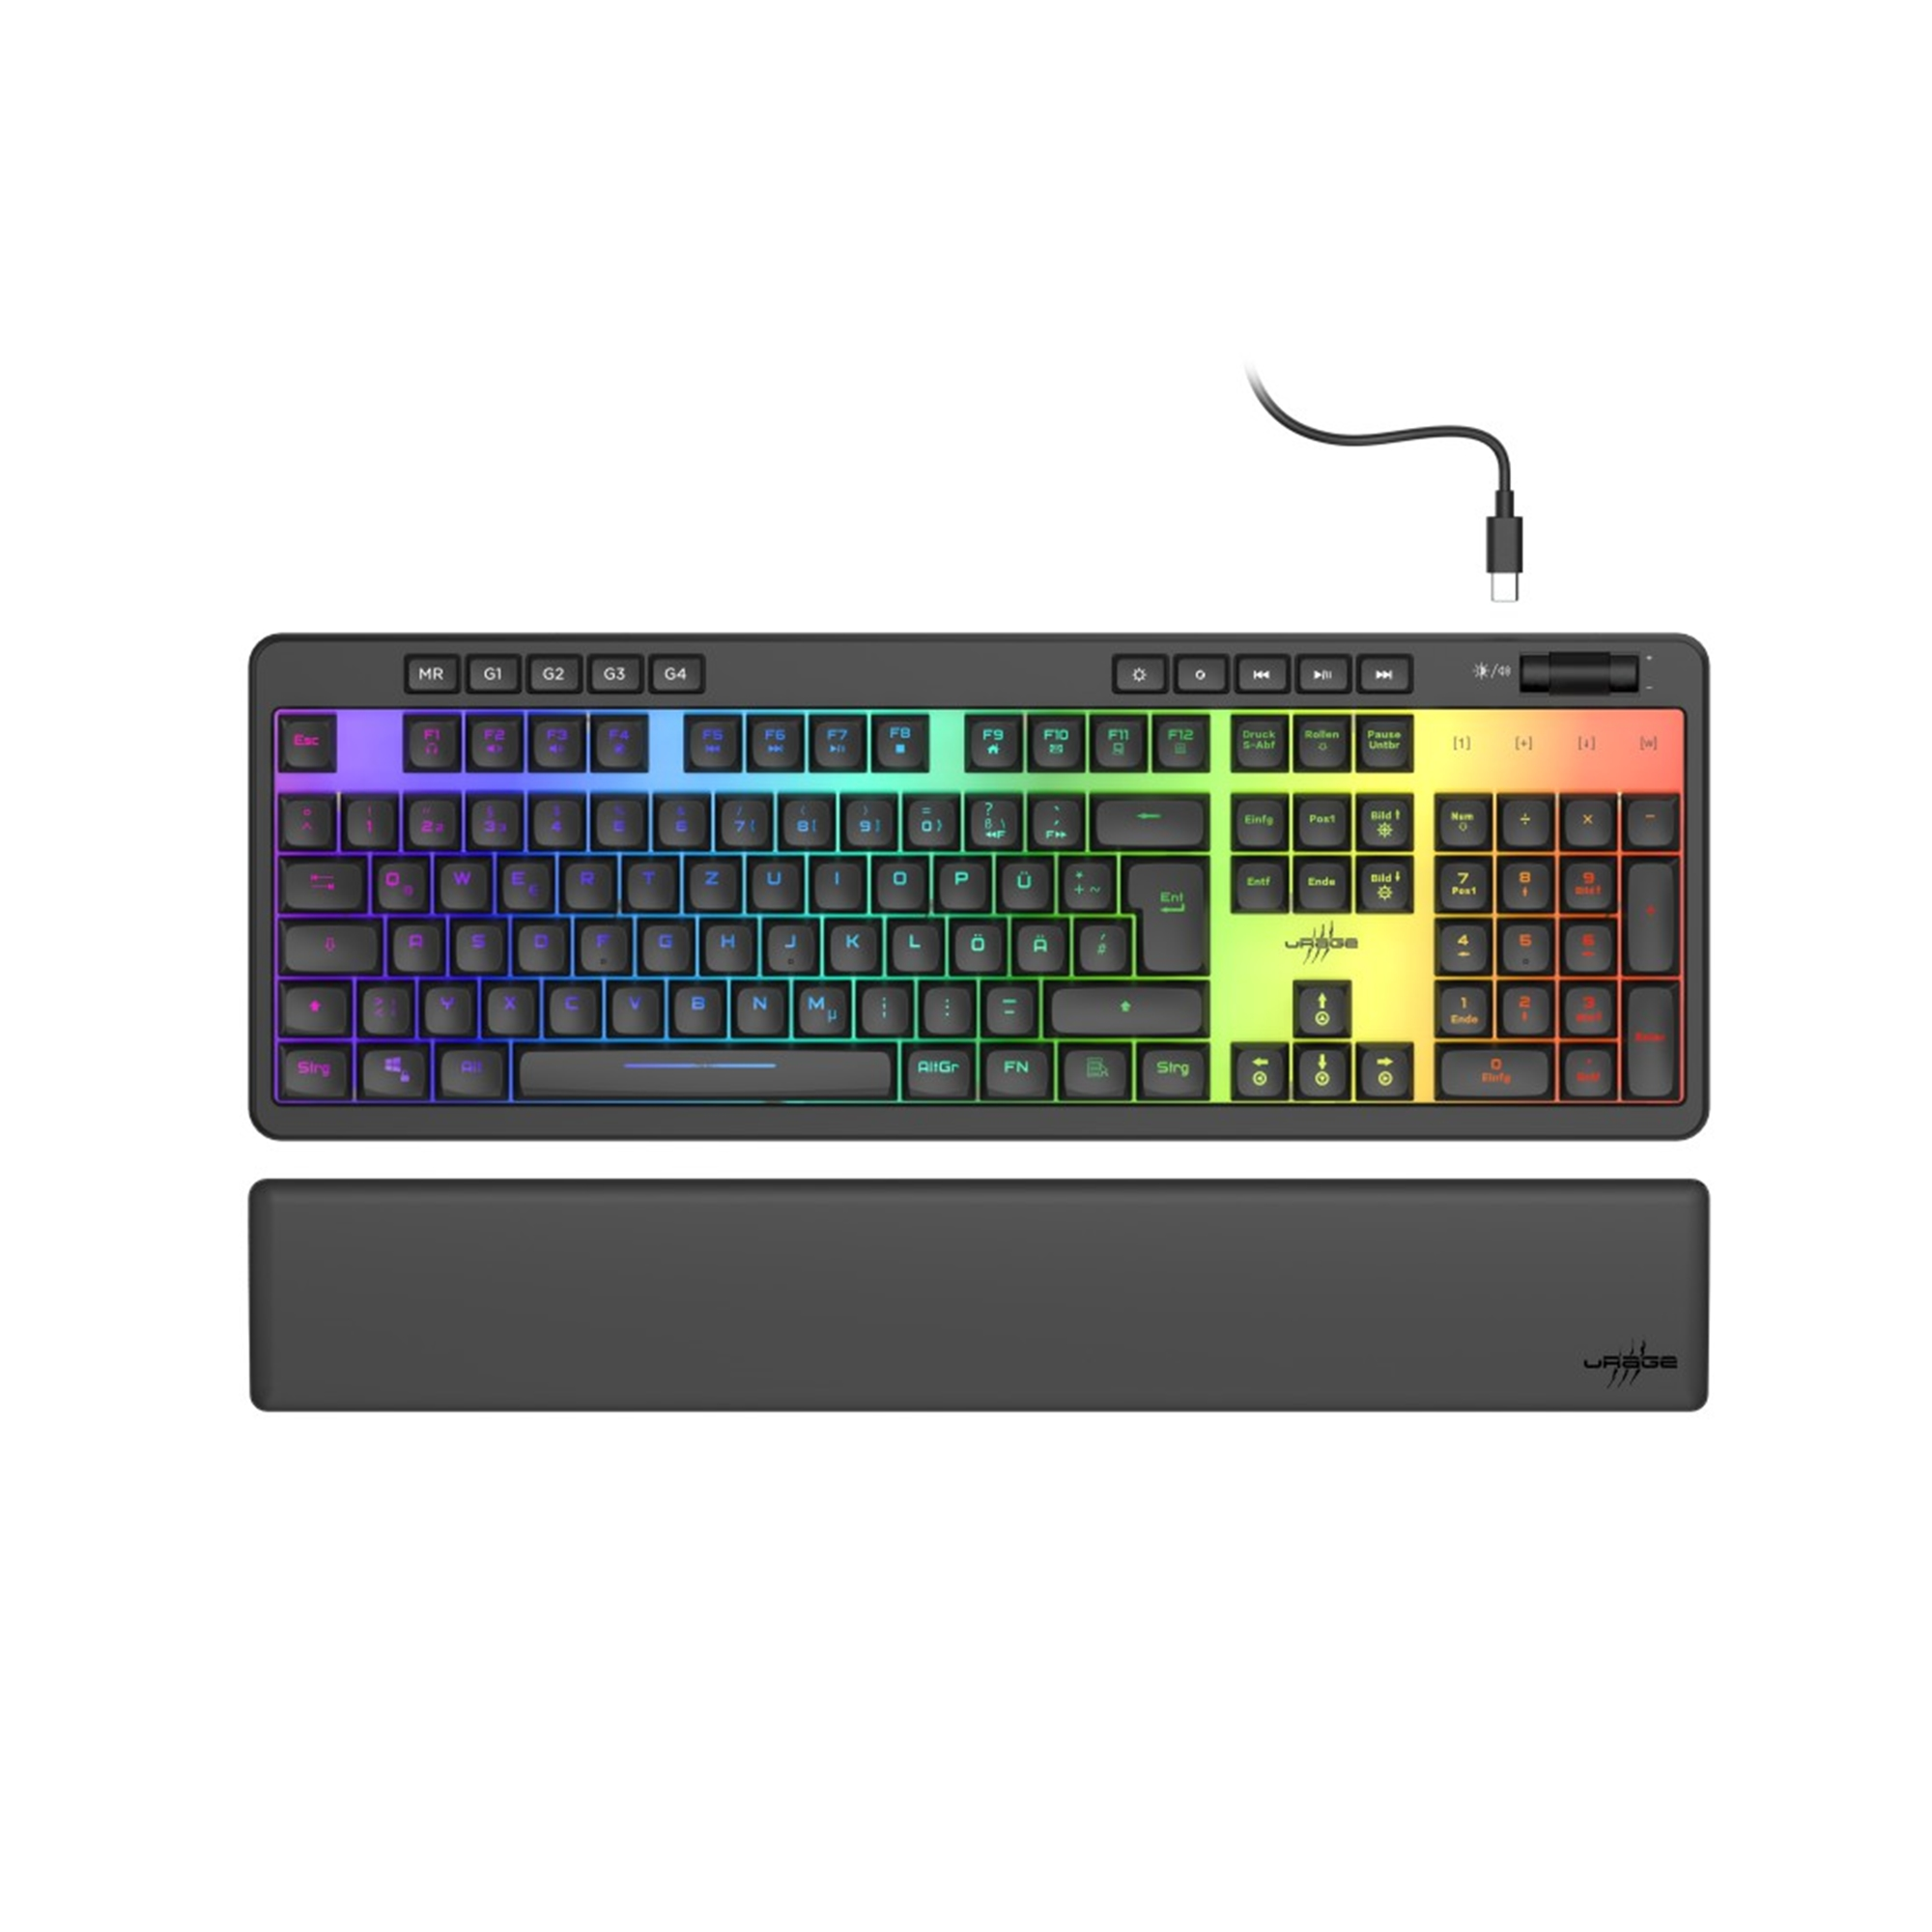 URAGE Exodus 515 Rubberdome Gaming-Tastatur, Illuminated